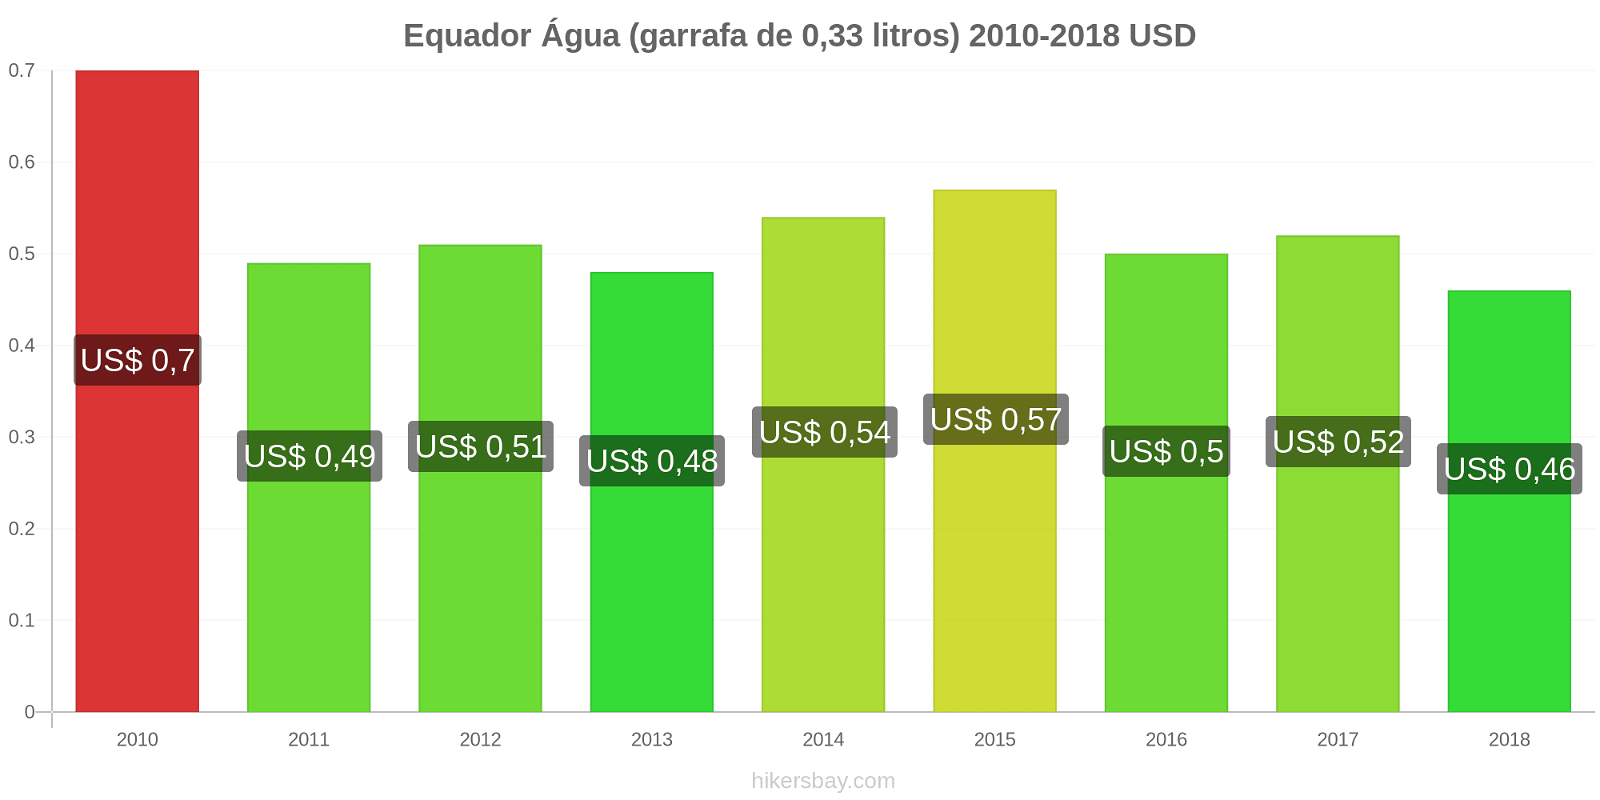 Equador mudanças de preços Água (garrafa de 0.33 litros) hikersbay.com